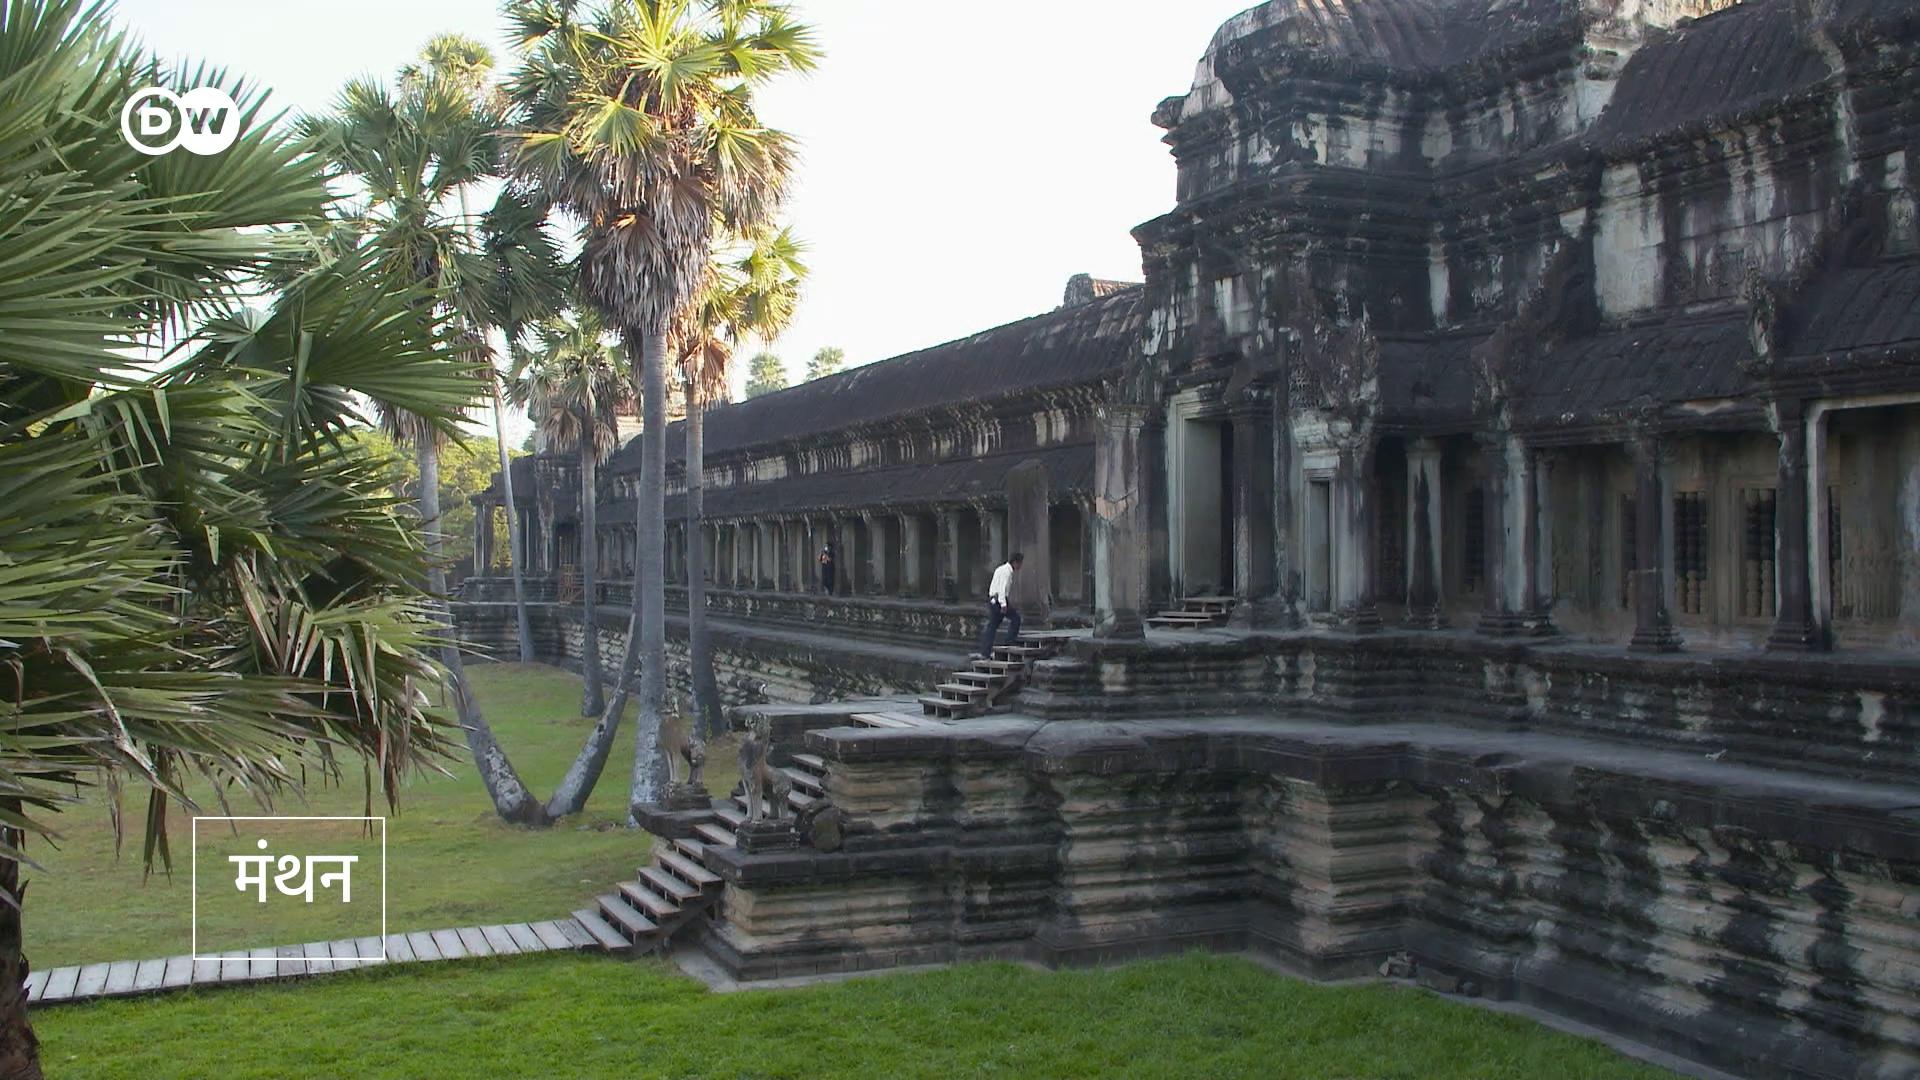 कोई कंबोडिया आकर यहां के मंदिर न देखे, यह तो नही हो सकता. पर जब मंदिर इतने लोकप्रिय हैं, तो यहां सन्नाटा क्यों है.